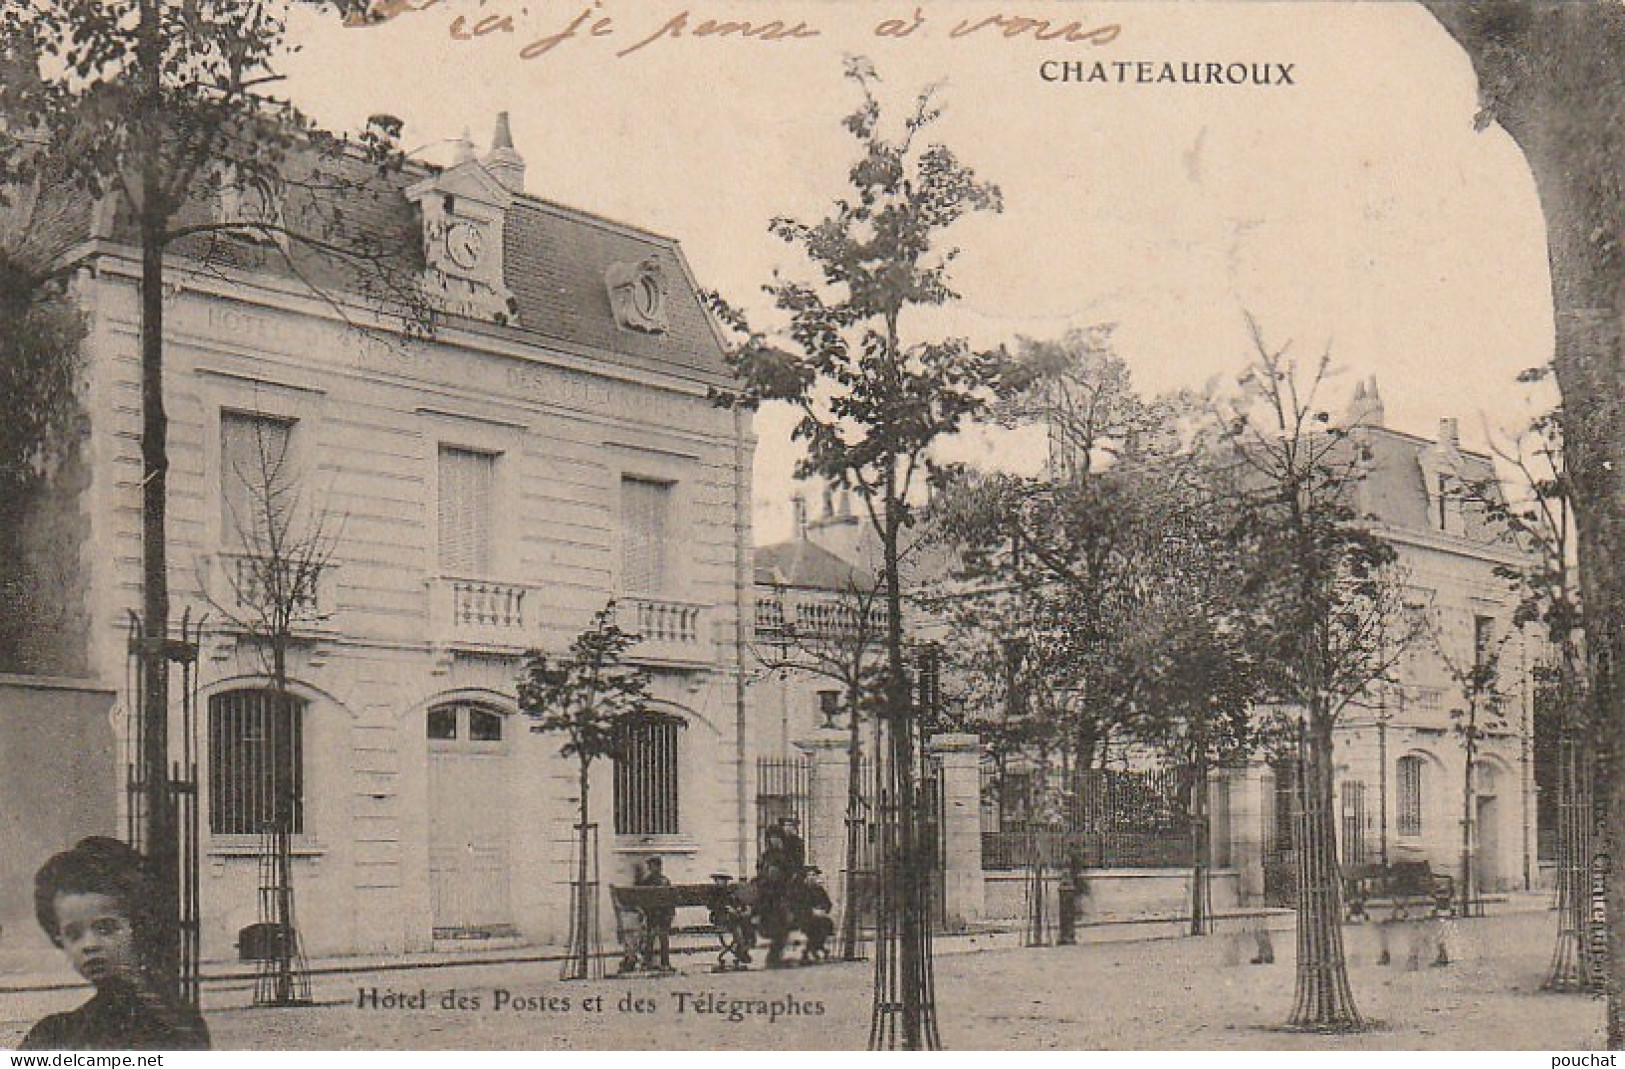 RE 6-(36) CHATEAUROUX - HOTEL DES POSTES ET DES TELEGRAPHES - 2 SCANS - Chateauroux